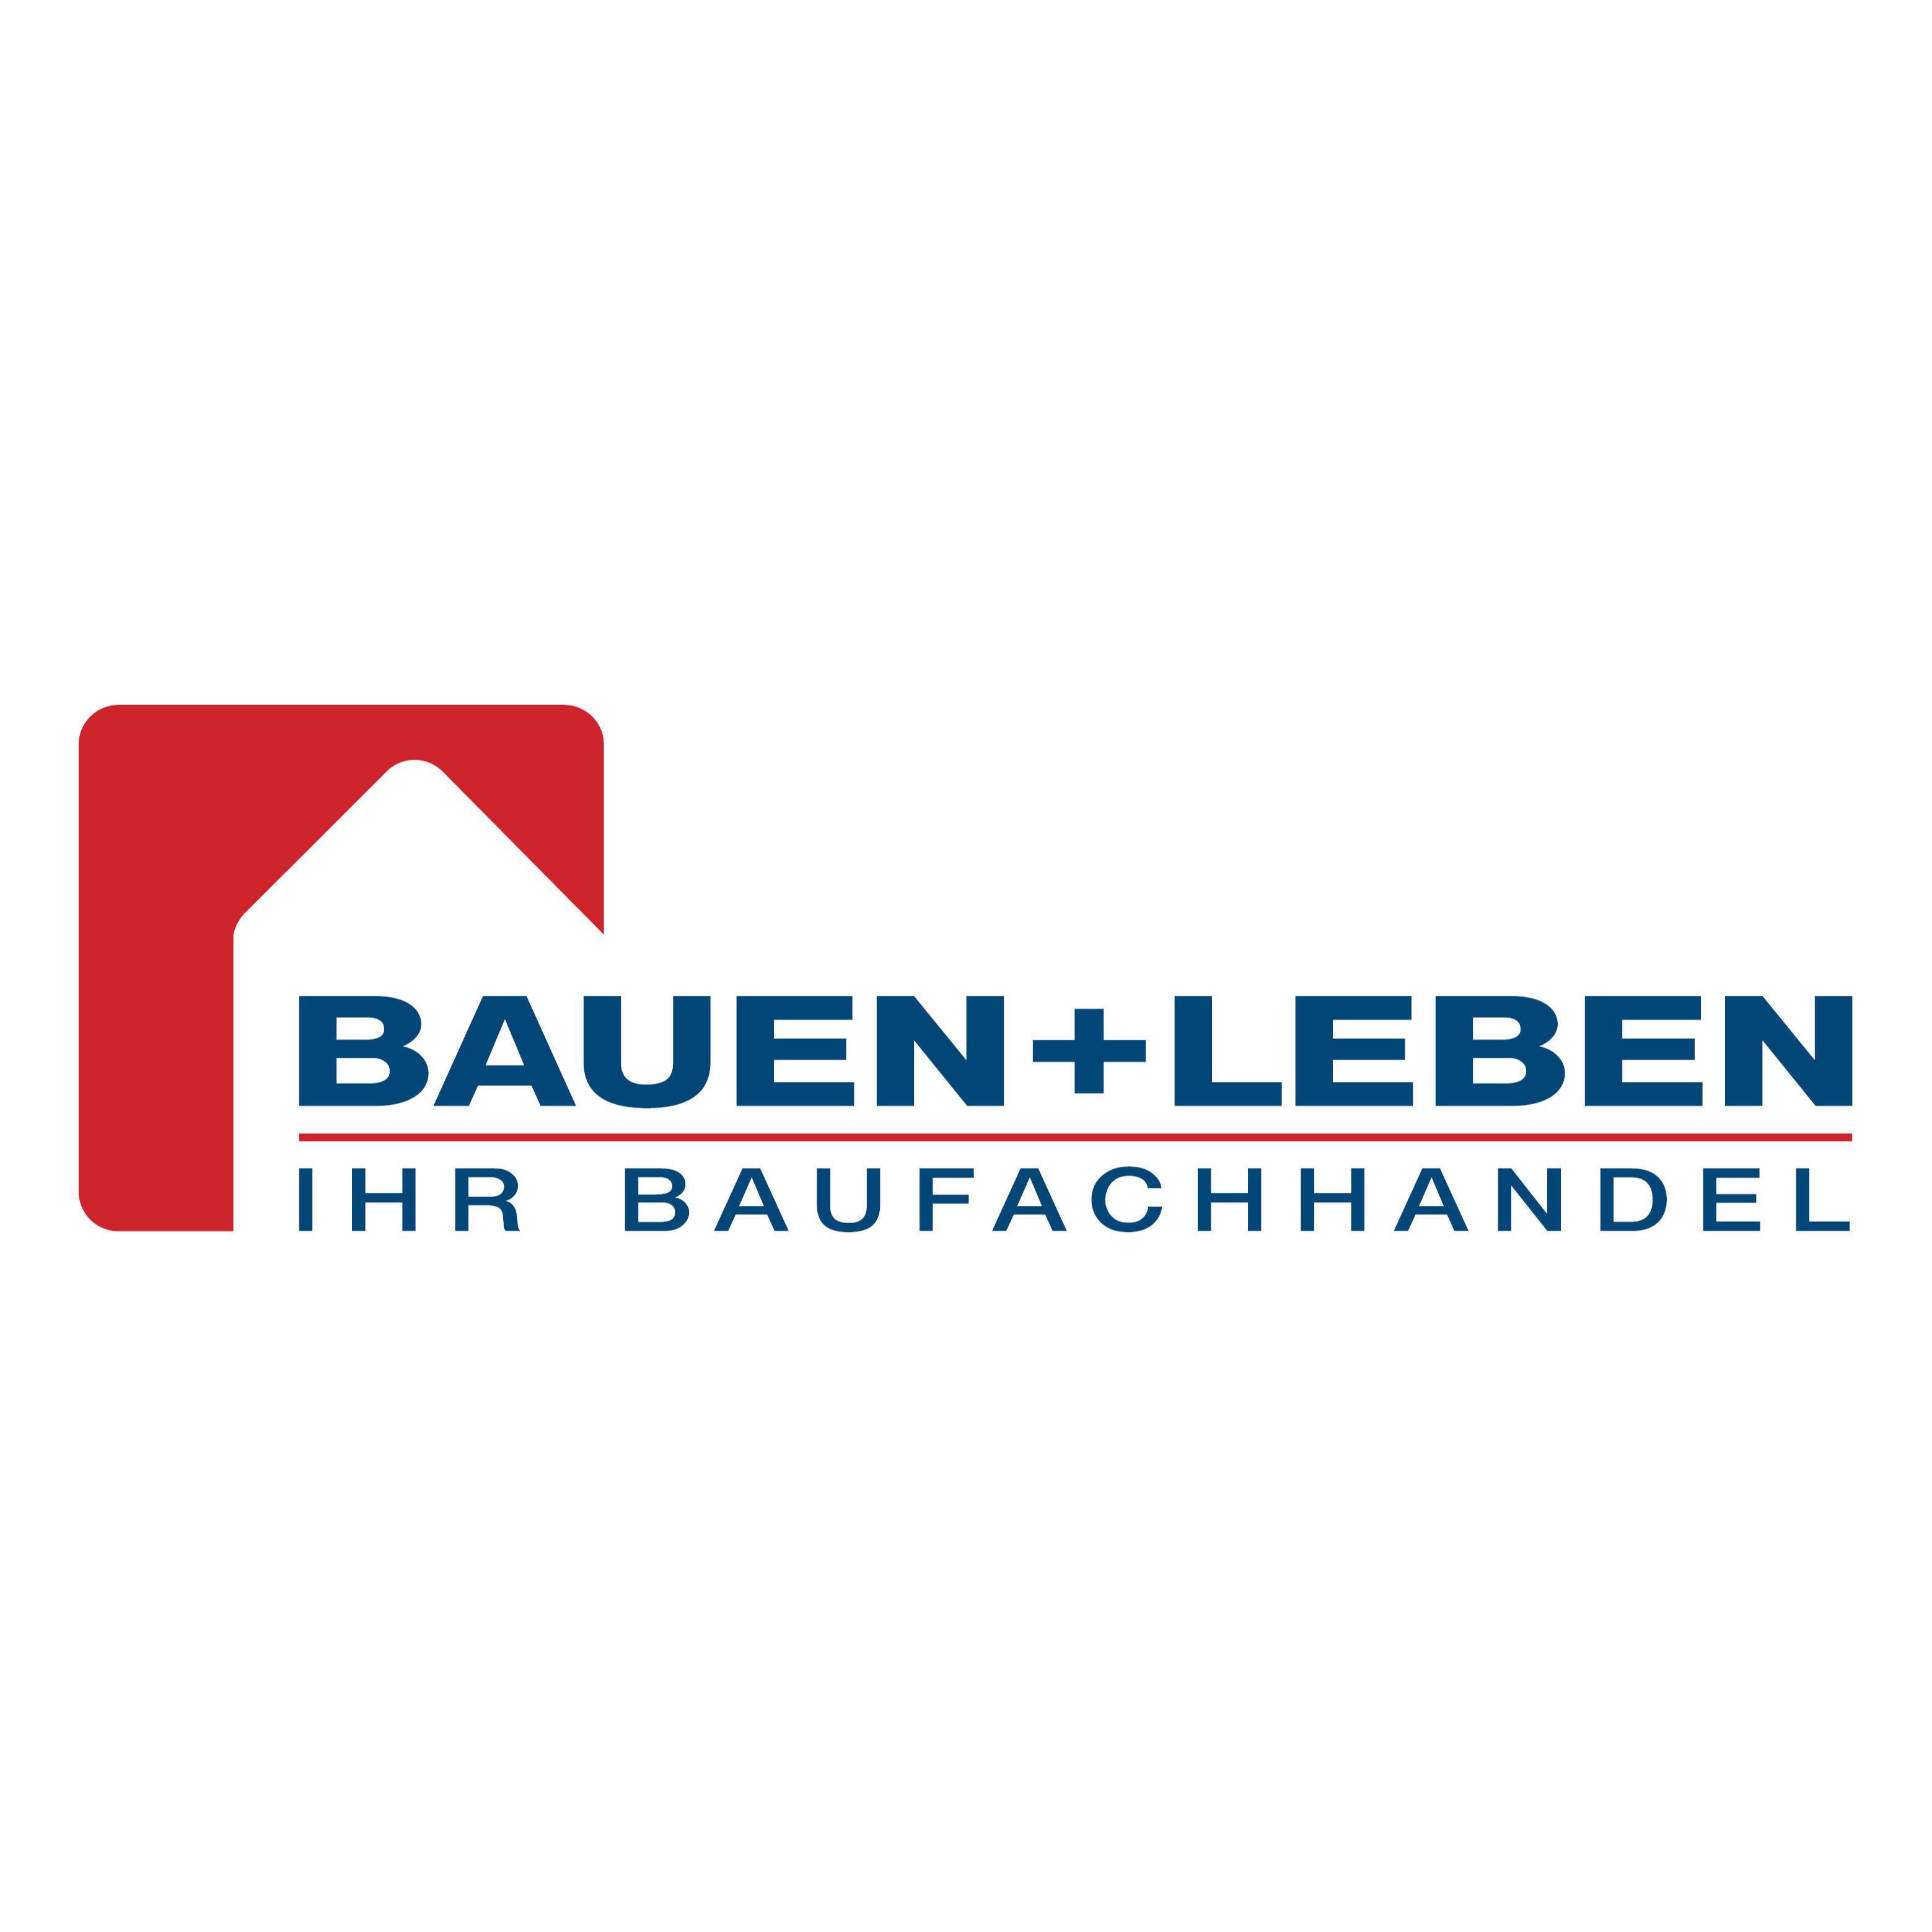 BAUEN+LEBEN - Ihr Baufachhandel Gerads Baufachzentrum GmbH & Co. KG in Wegberg - Logo